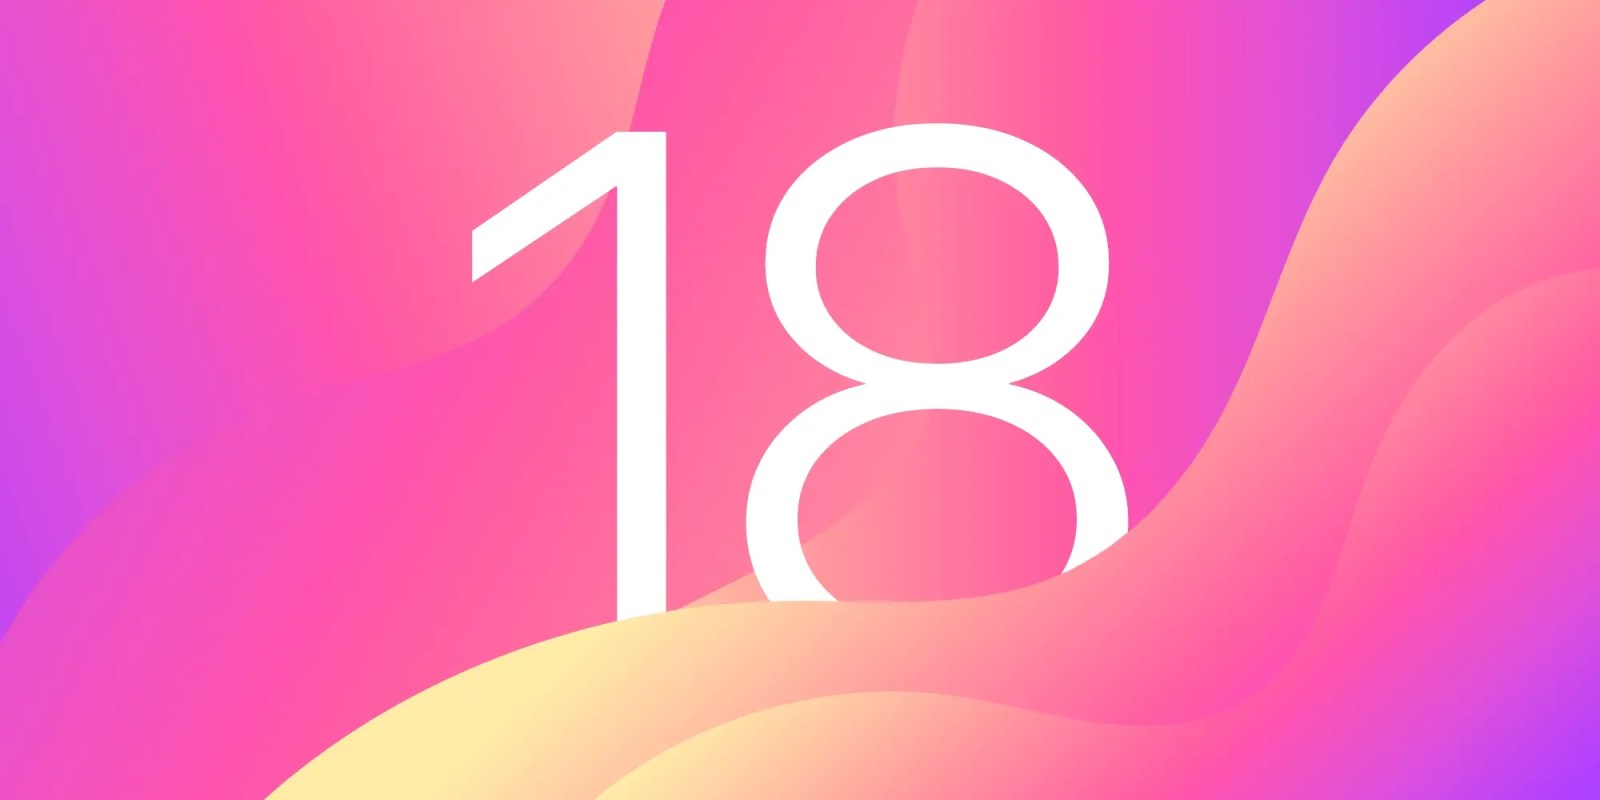 Гурман: в iOS 18 появится новый домашний экран, который будет «более настраиваемым» в рамках крупнейшего обновления iPhone за всю историю